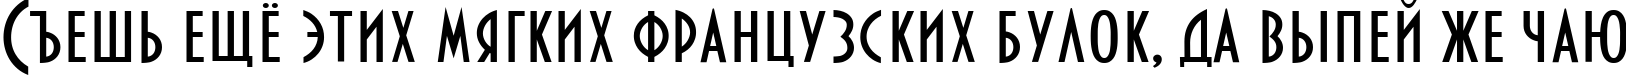 Пример написания шрифтом Bankir-Retro текста на русском